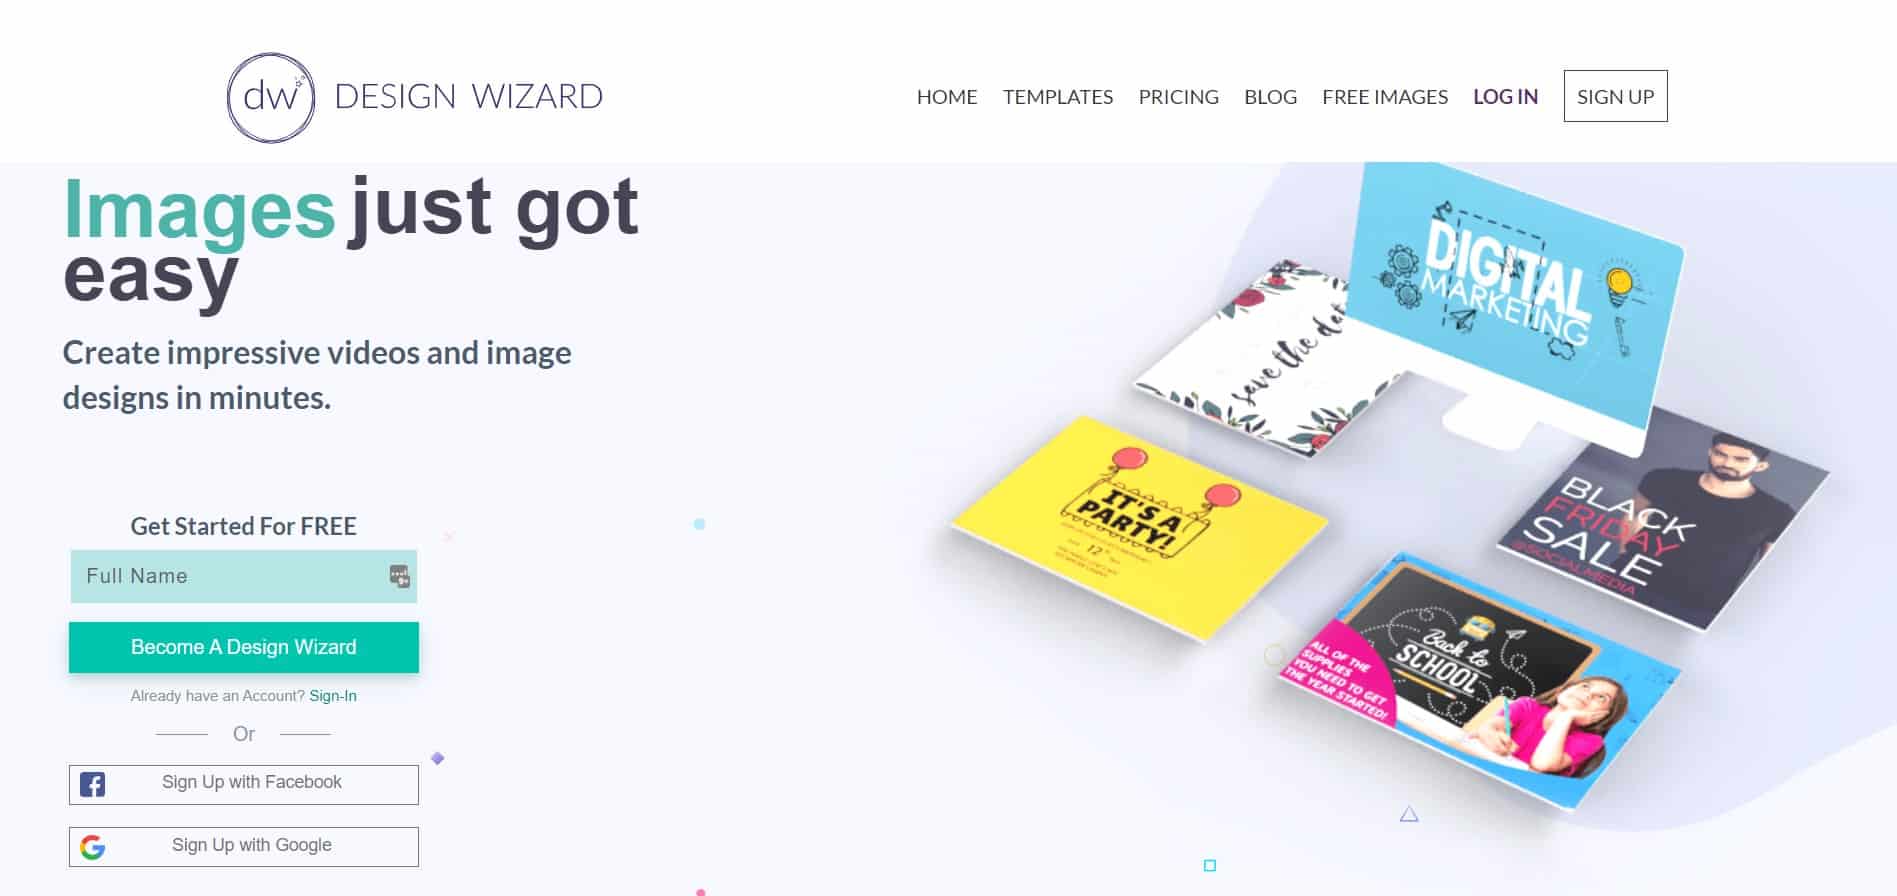 المنصة الرئيسية Design Wizard Design Wizard مع زر التسجيل للاشتراك الجديد الخاص بك في المنصة